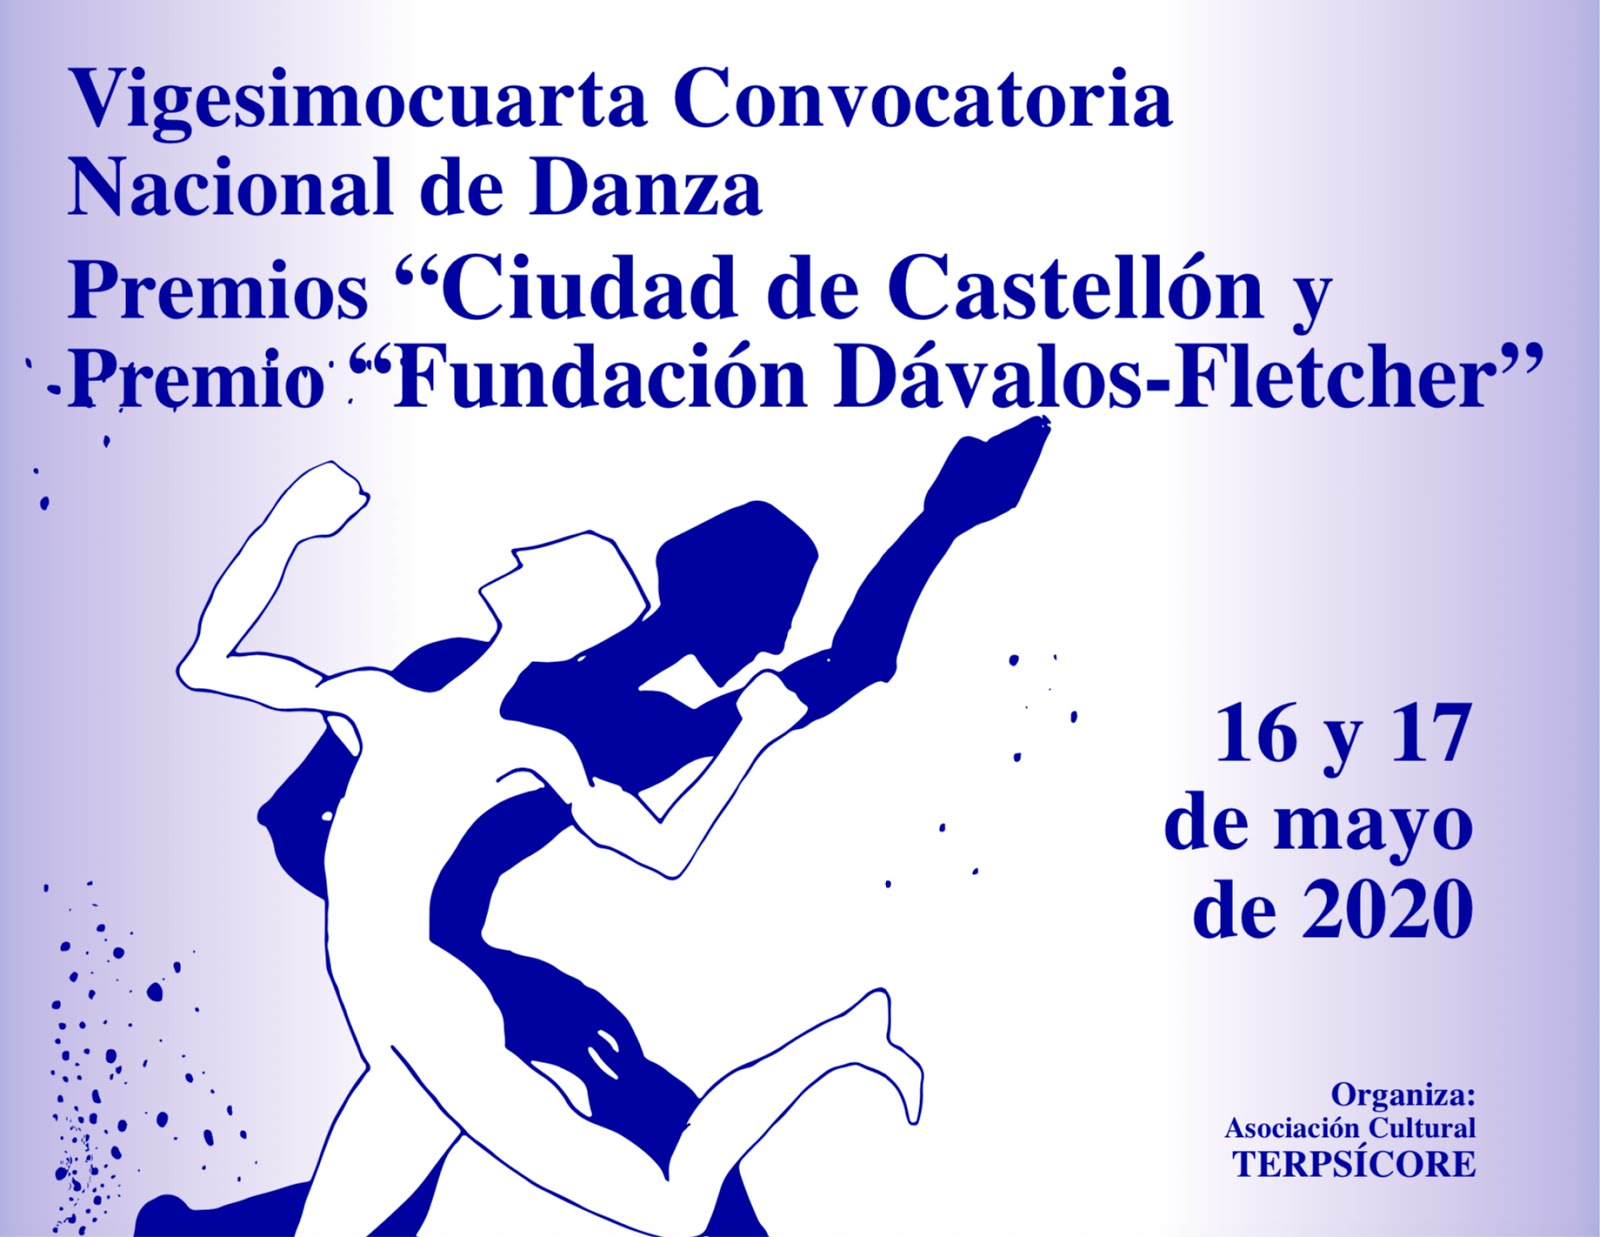 Vigésimocuarta Convocatoria Nacional de Danza Premios "Ciudad de Castellón"